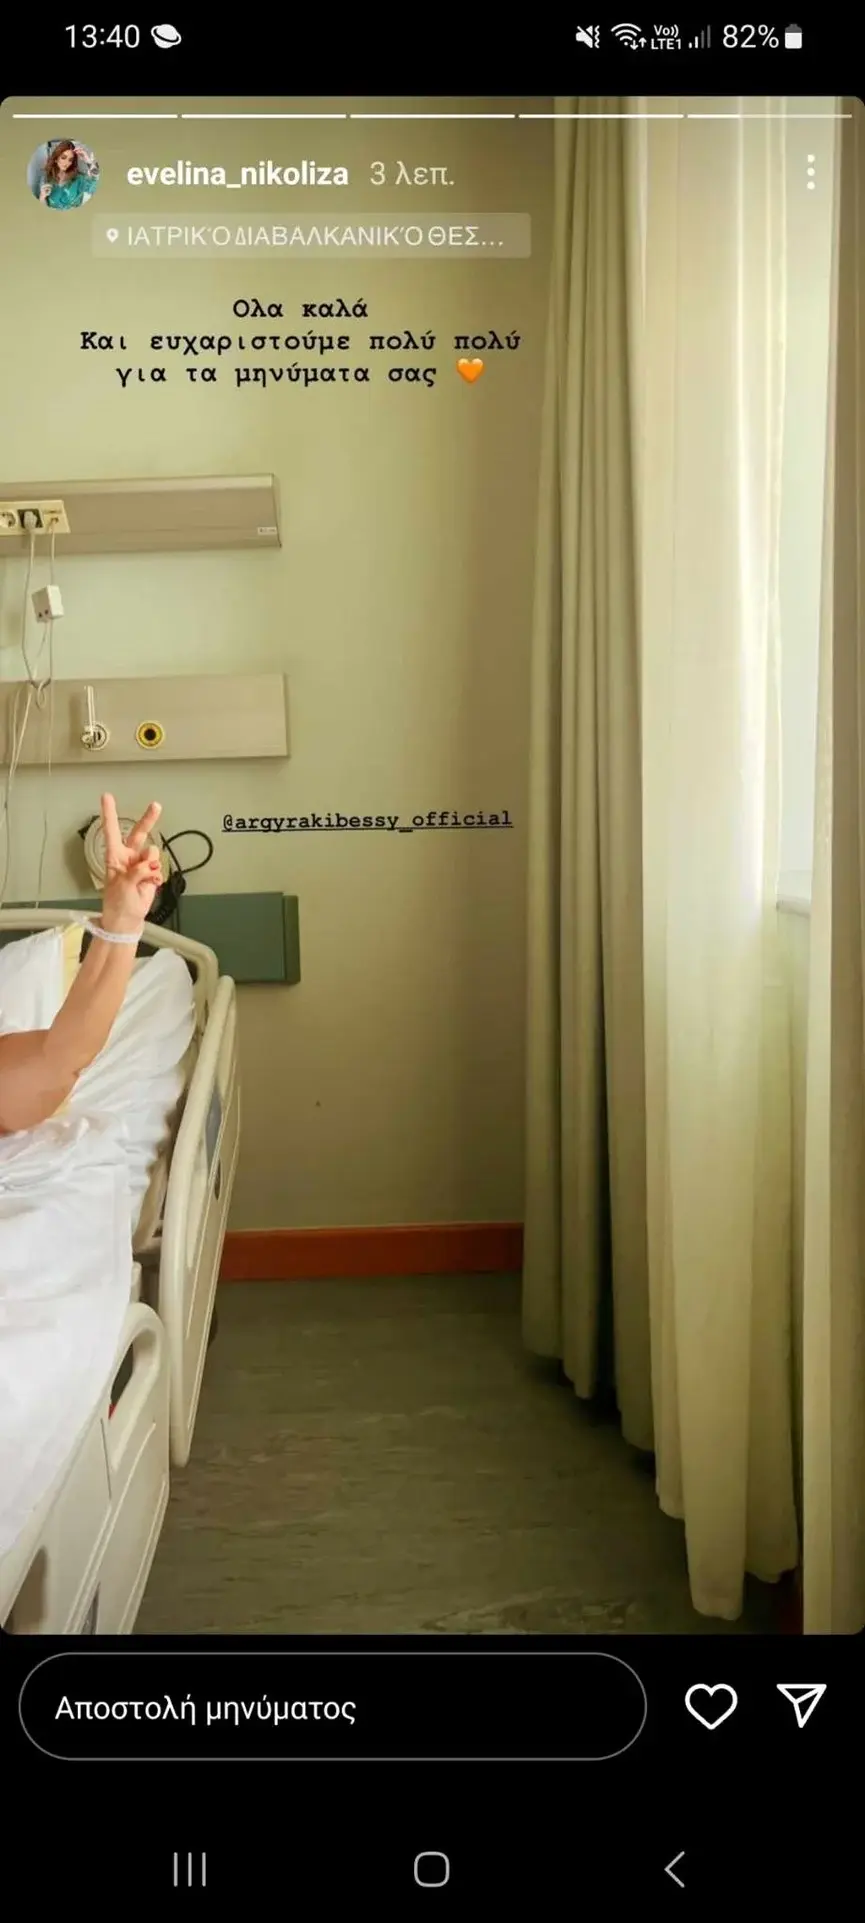 Μπέσσυ Αργυράκη: Κάνει το σήμα της νίκης μέσα από το νοσοκομείο - «Όλα καλά» - LIFESTYLE